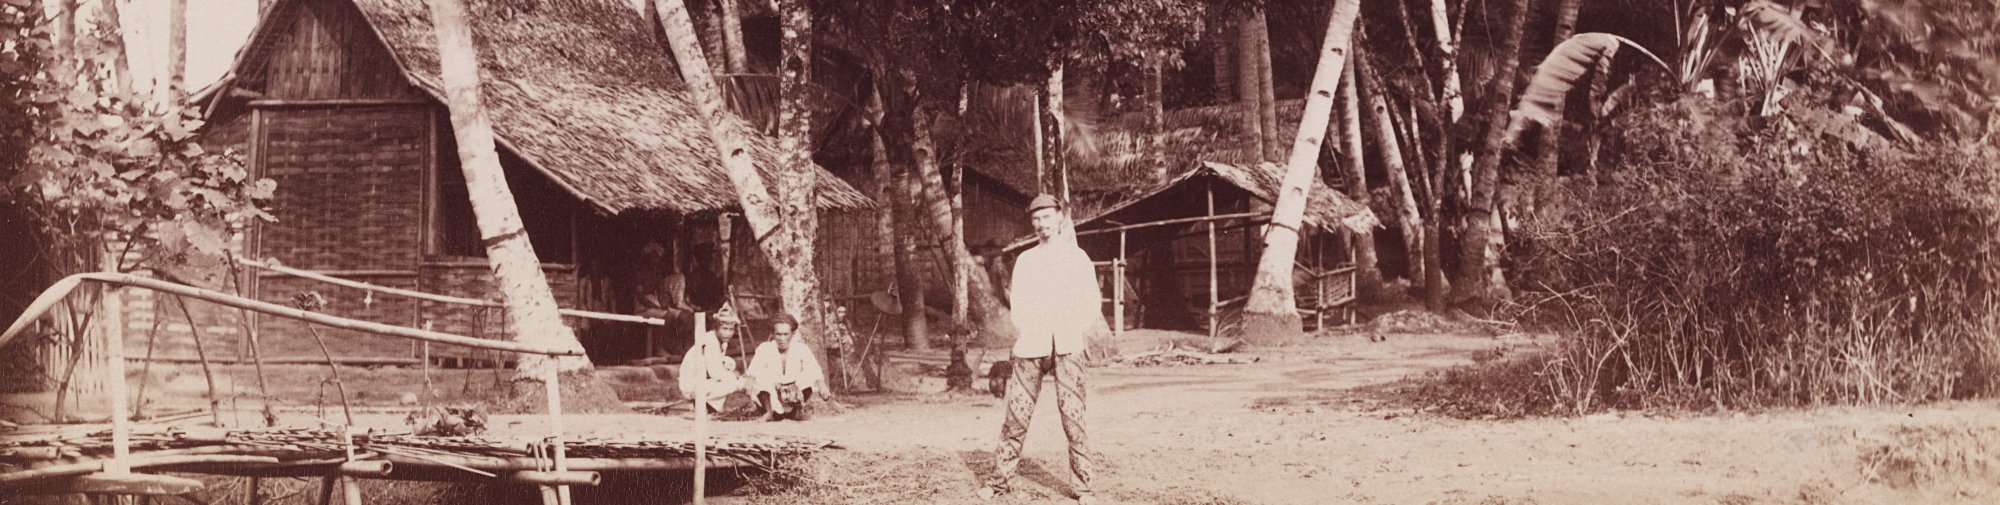 Sidney W. Brown mit zwei Einheimischen, Indonesien 1888, Archiv Museum Langmatt